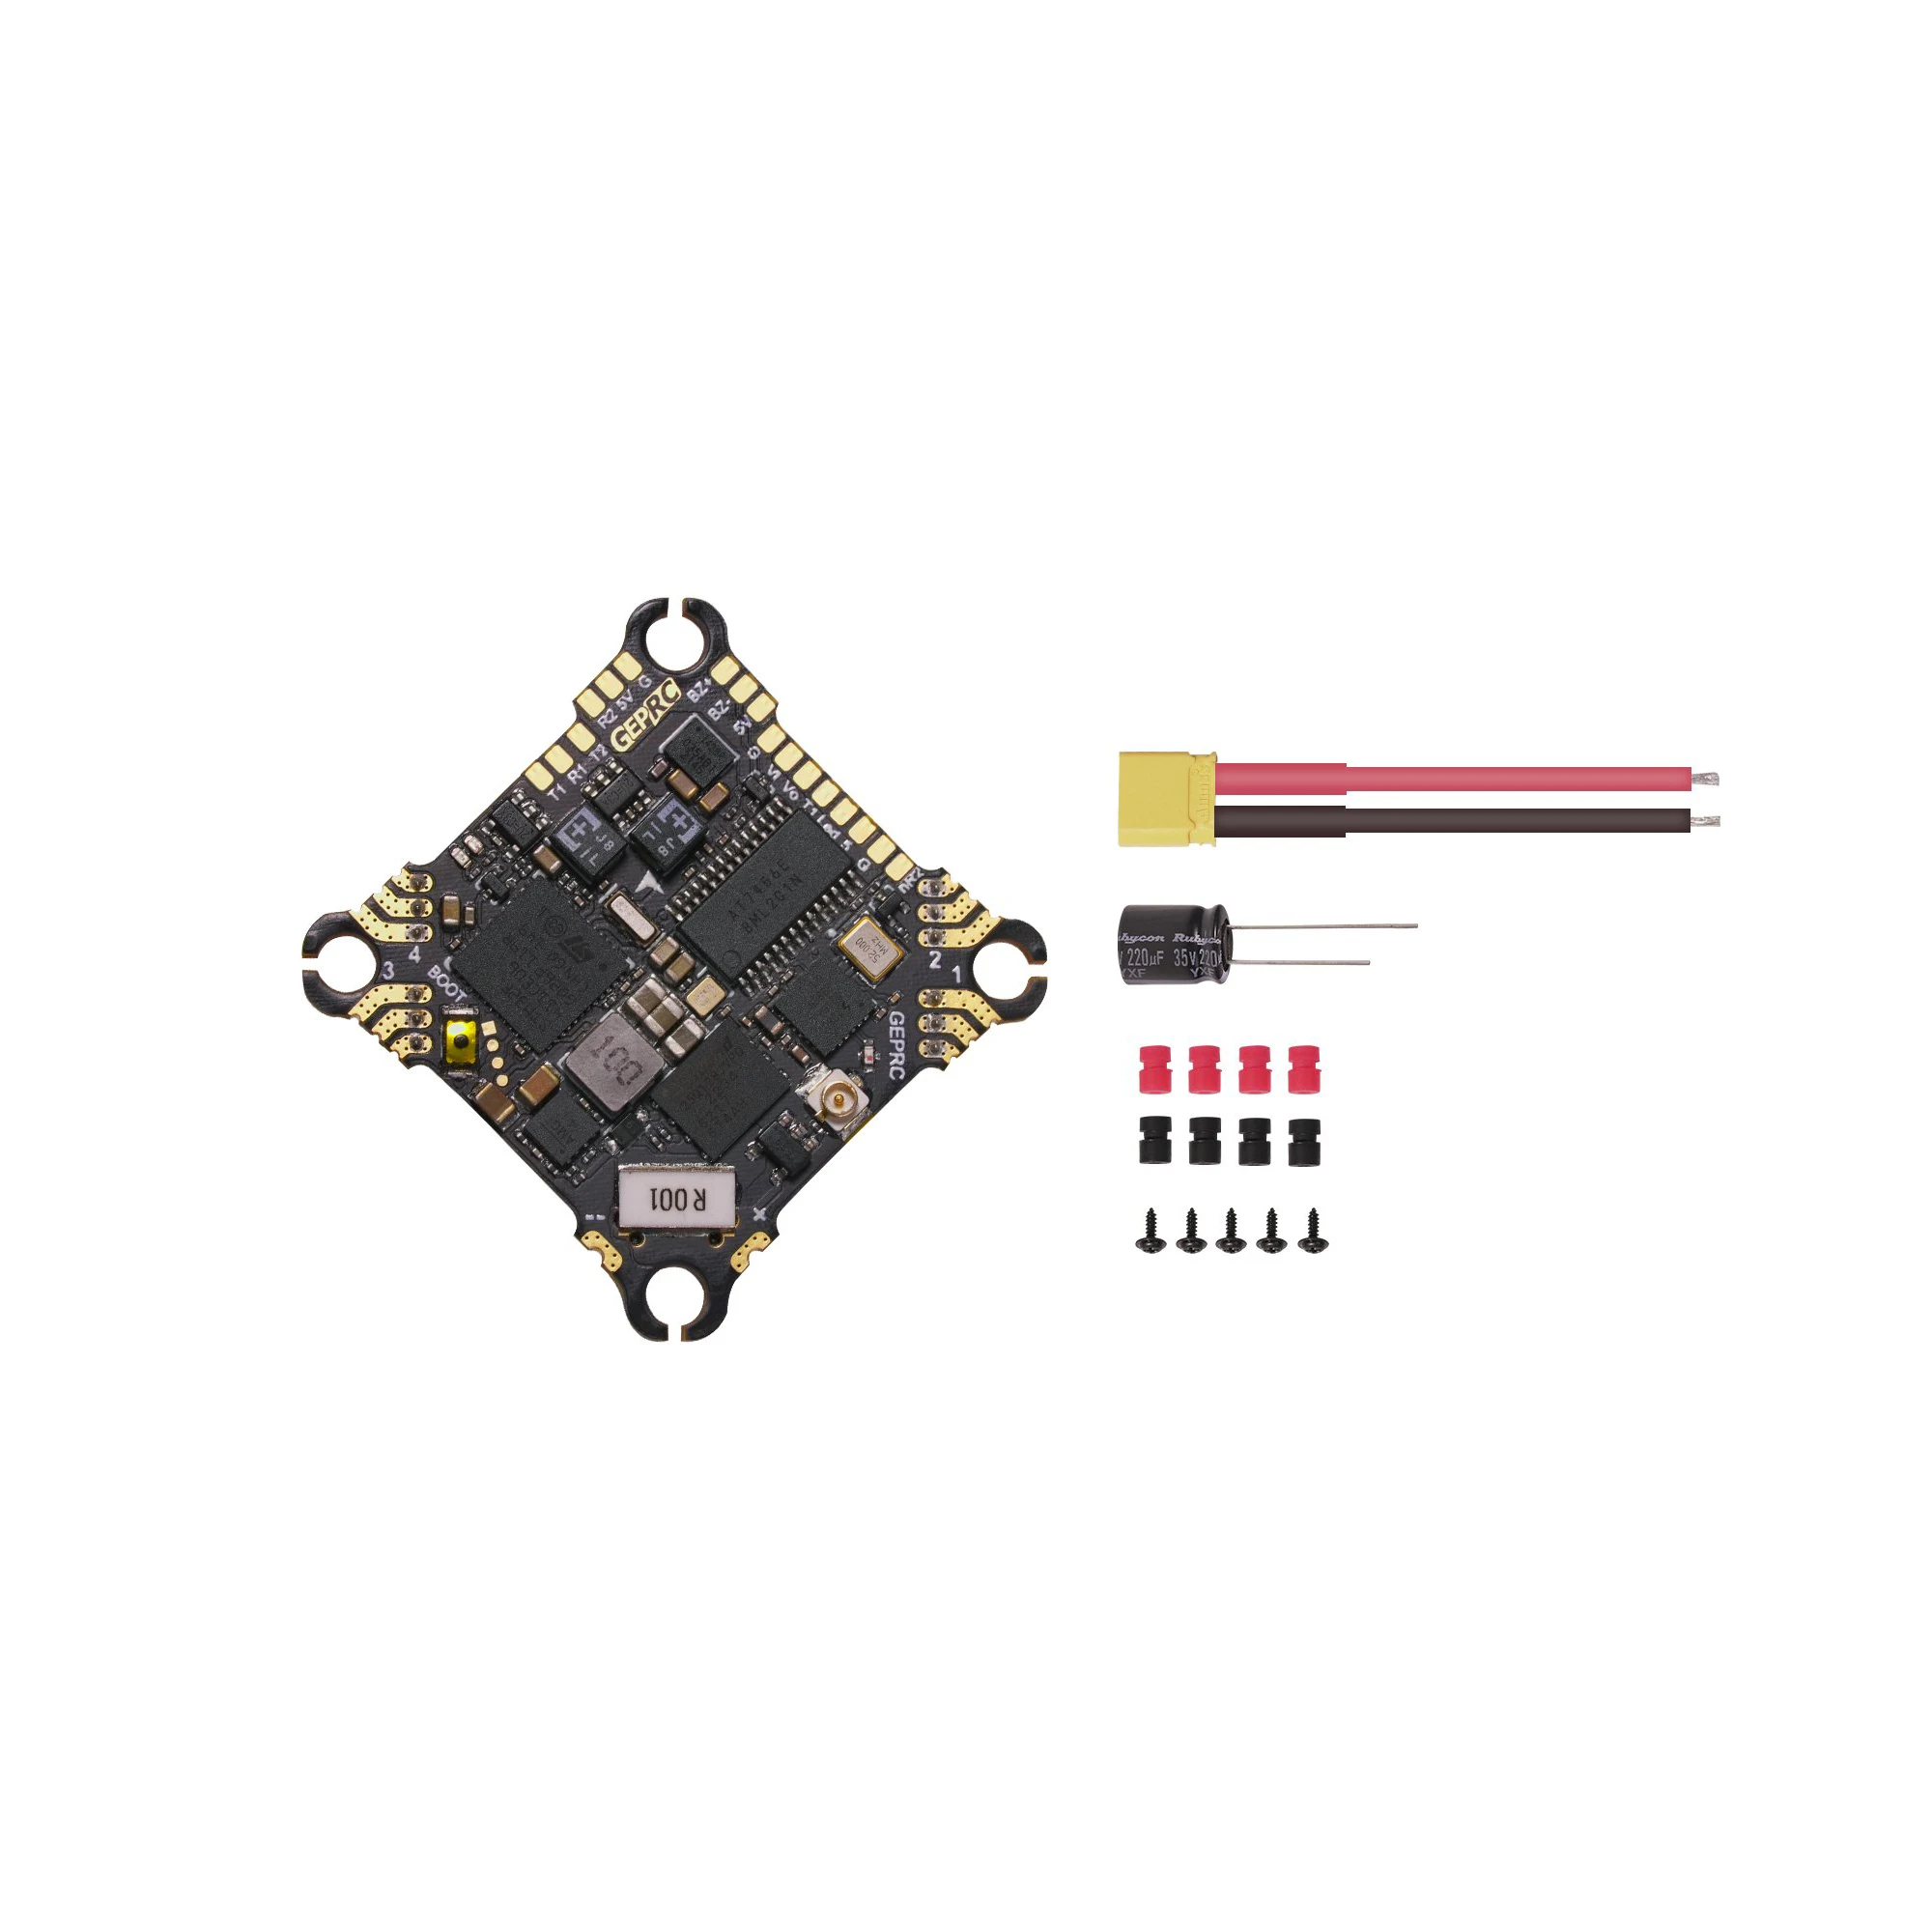 

Контроллер полета GEPRC мягкий F4, 8 бит, 12 А, ESC, F411, поддержка аккумулятора 2-4s для радиоуправляемого крошечного гоночного дрона